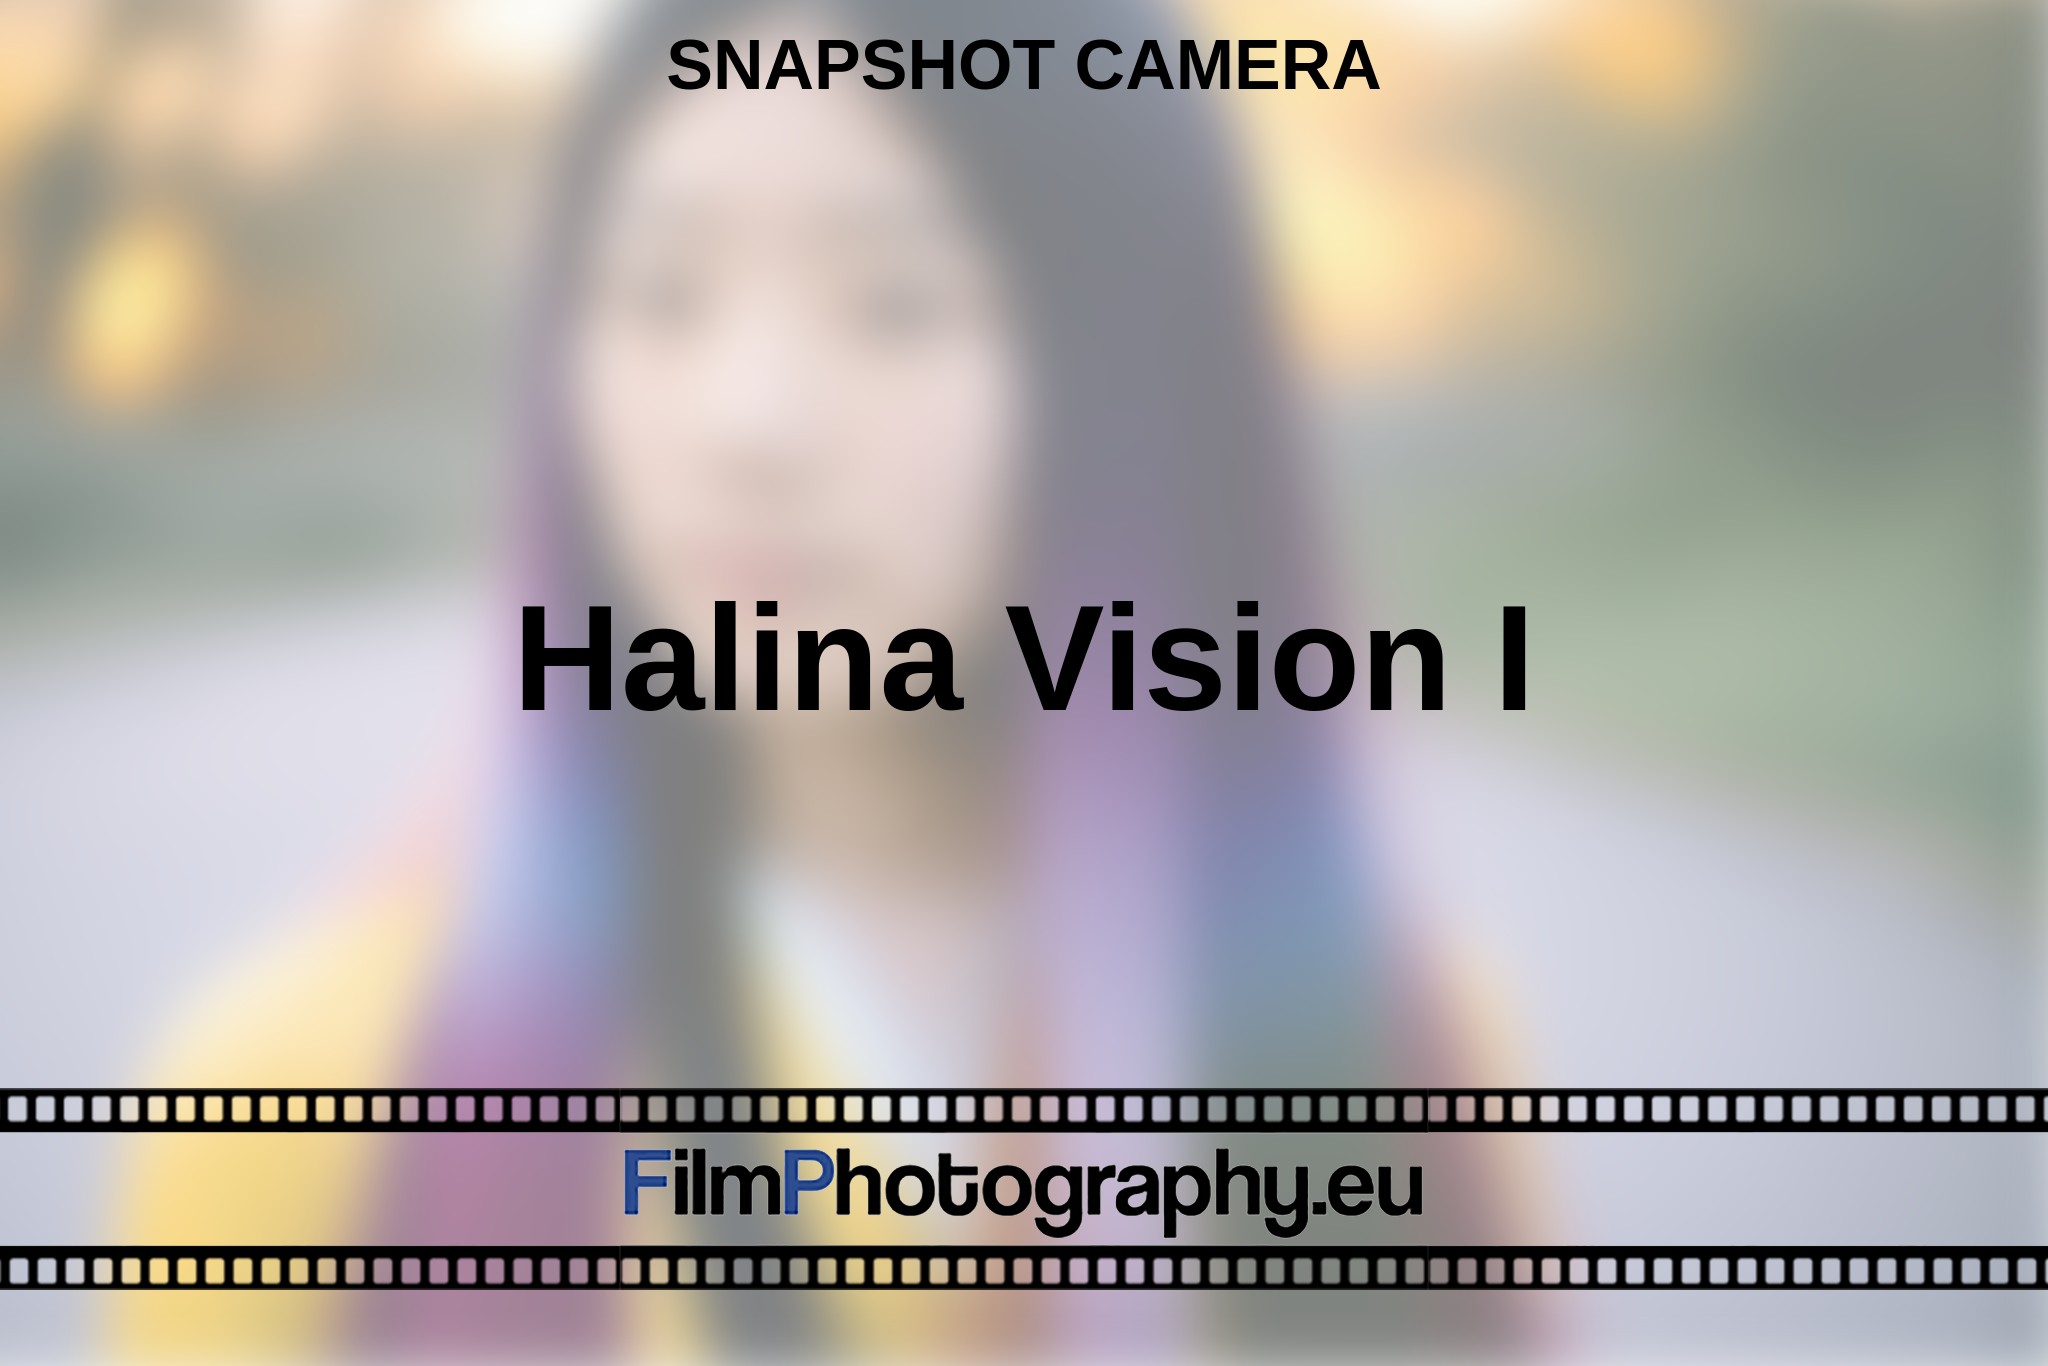 halina-vision-i-snapshot-camera-en-bnv.jpg